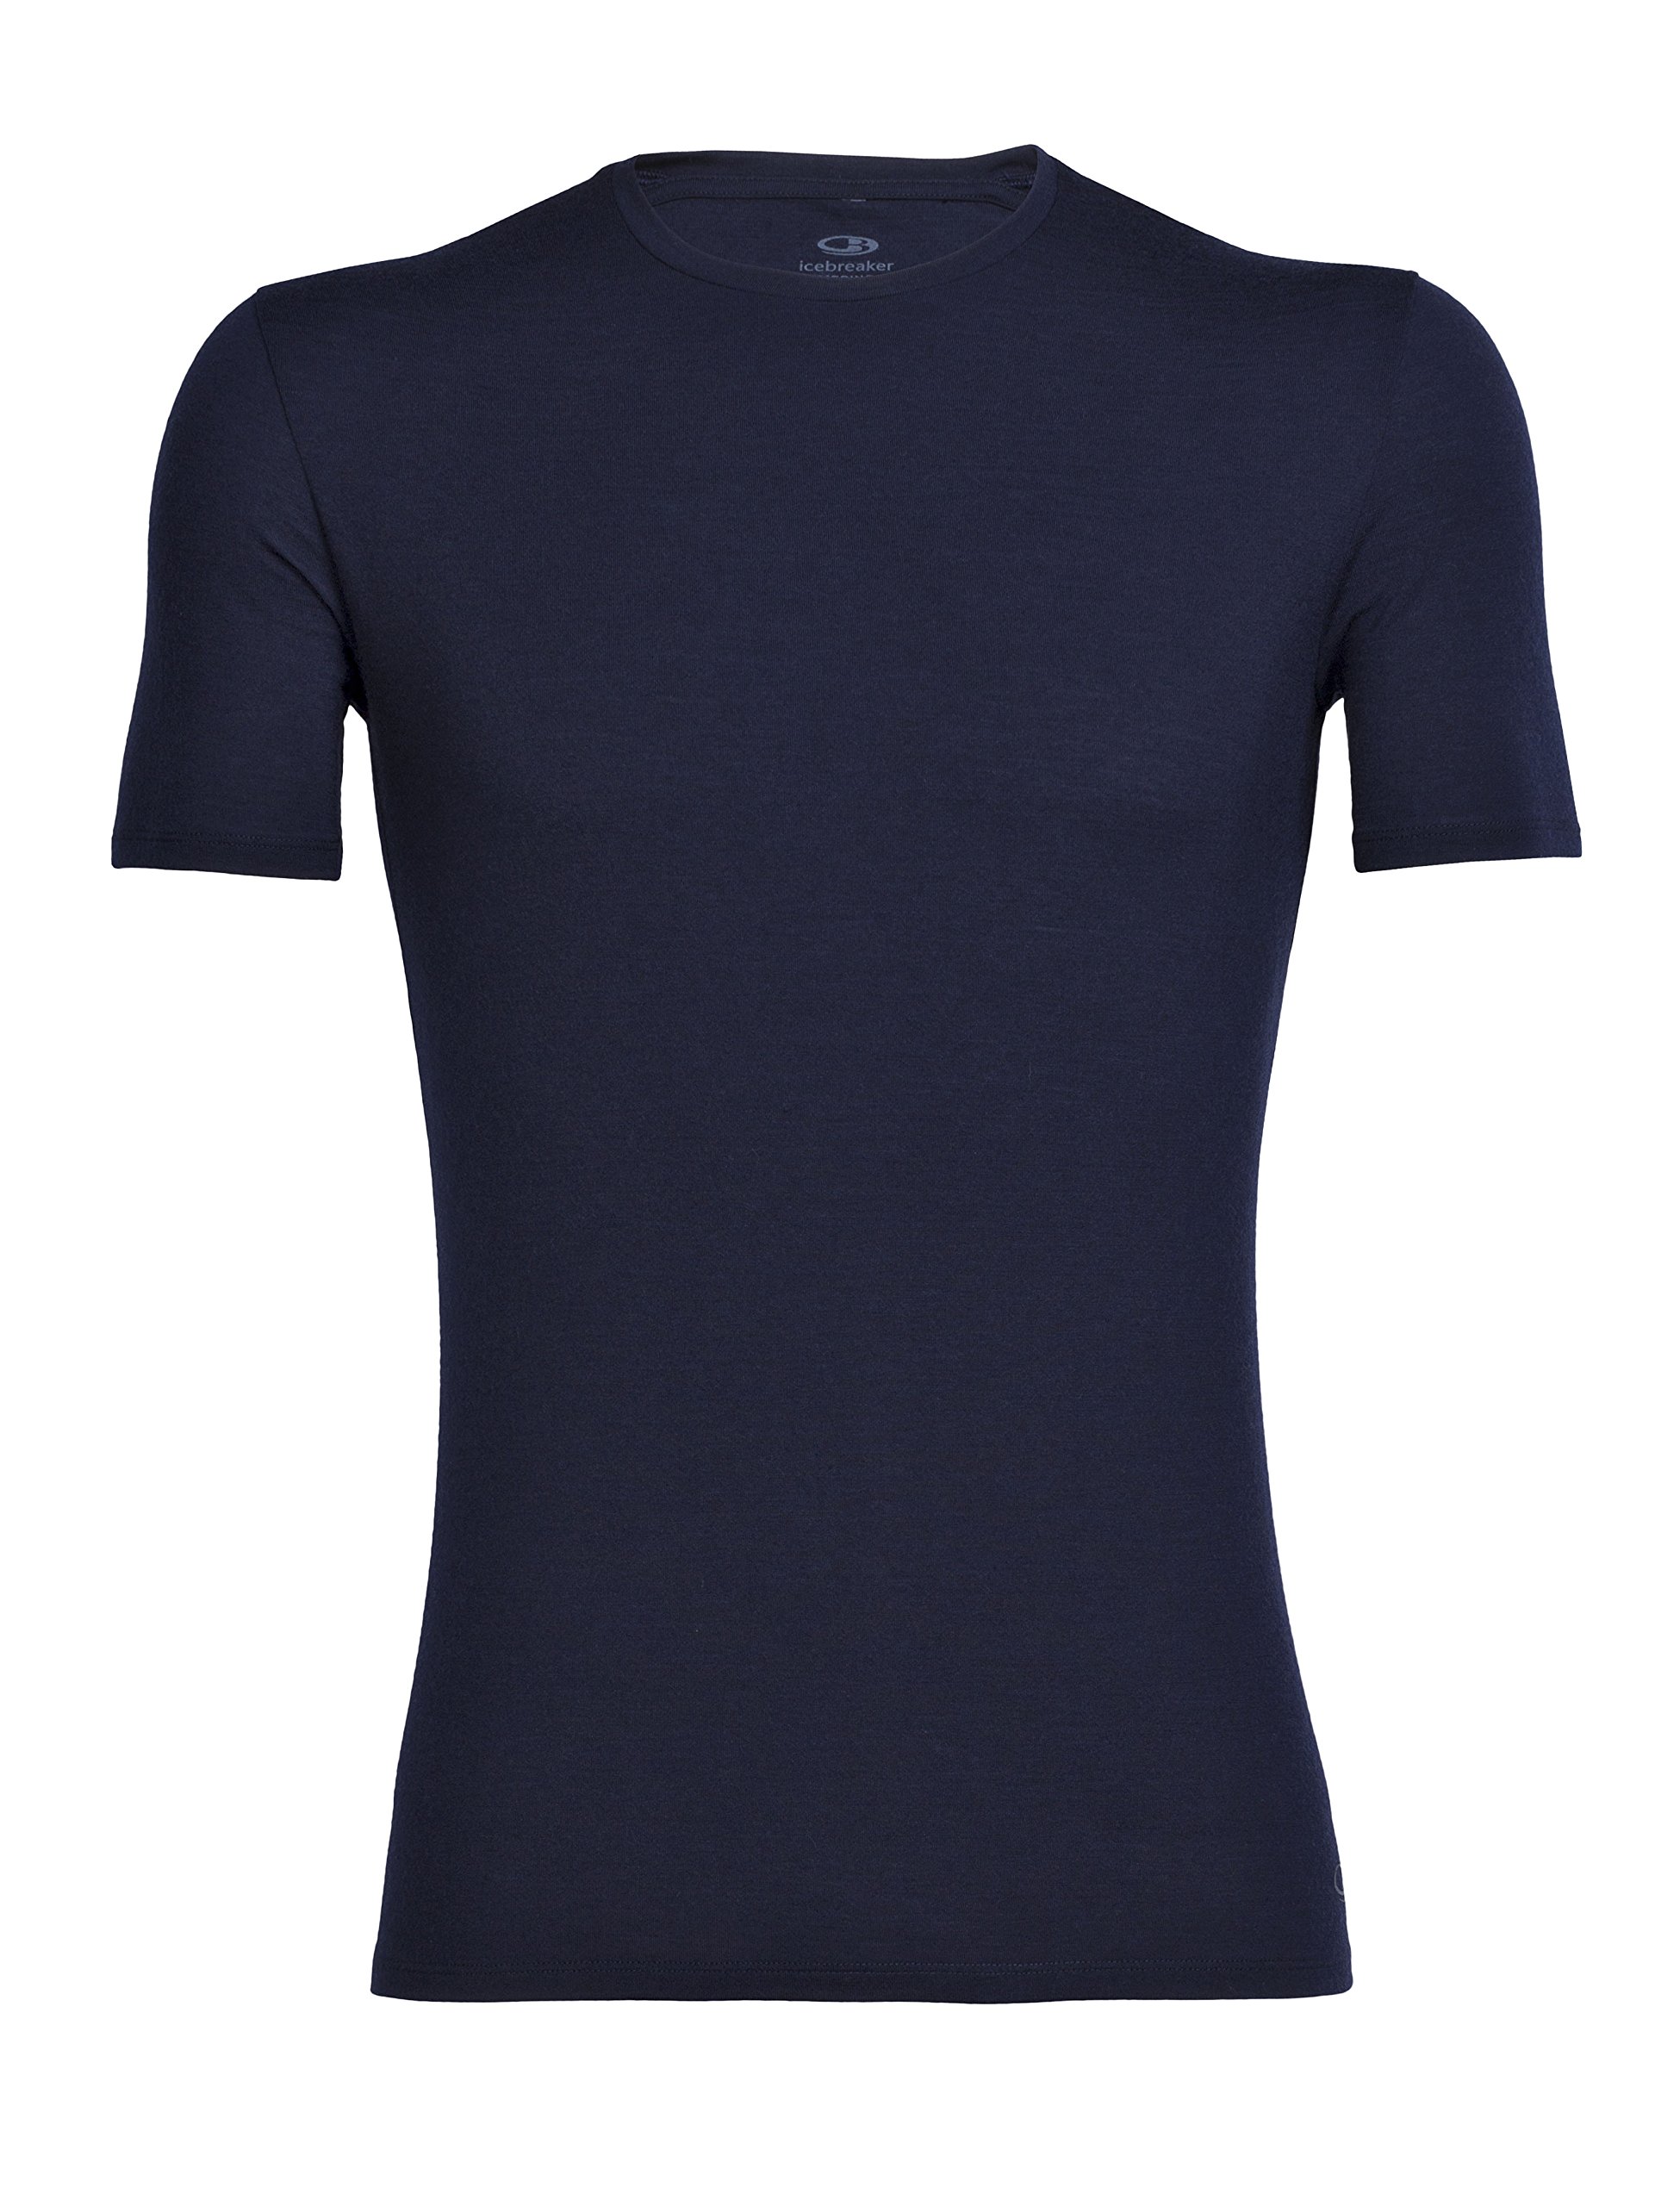 Icebreaker Herren Anatomica Crewe T-Shirt - Funktionsshirt Herren - Merinowolle Unterwäsche - Mitternachtsmarine, M